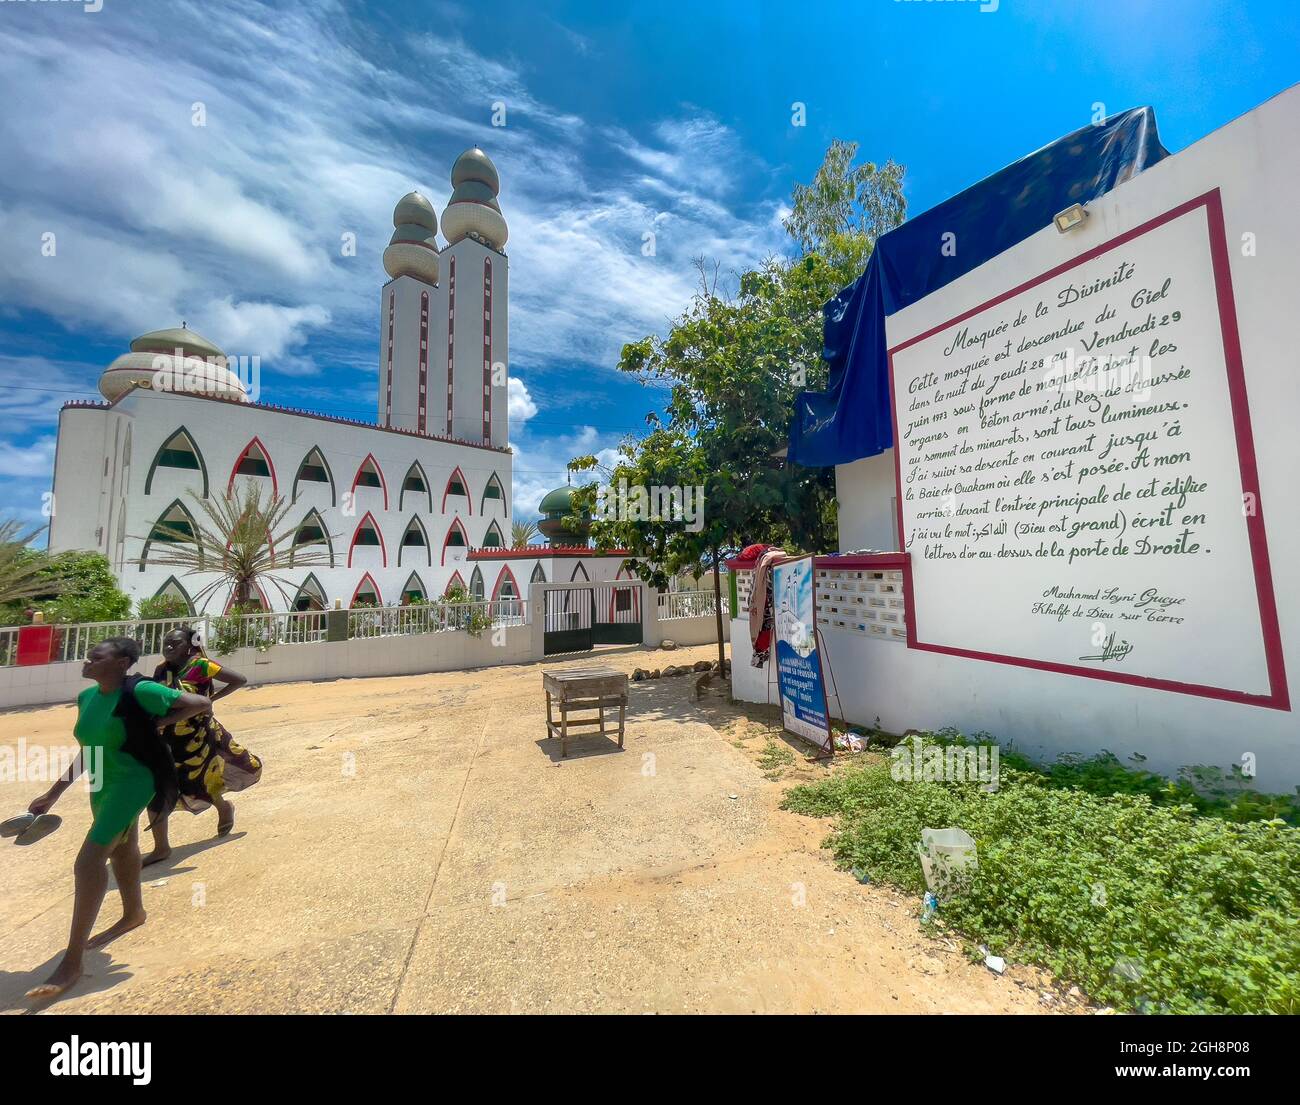 The divinity mosque, 'mosquée de la divinité' in french, Dakar, Senegal Stock Photo